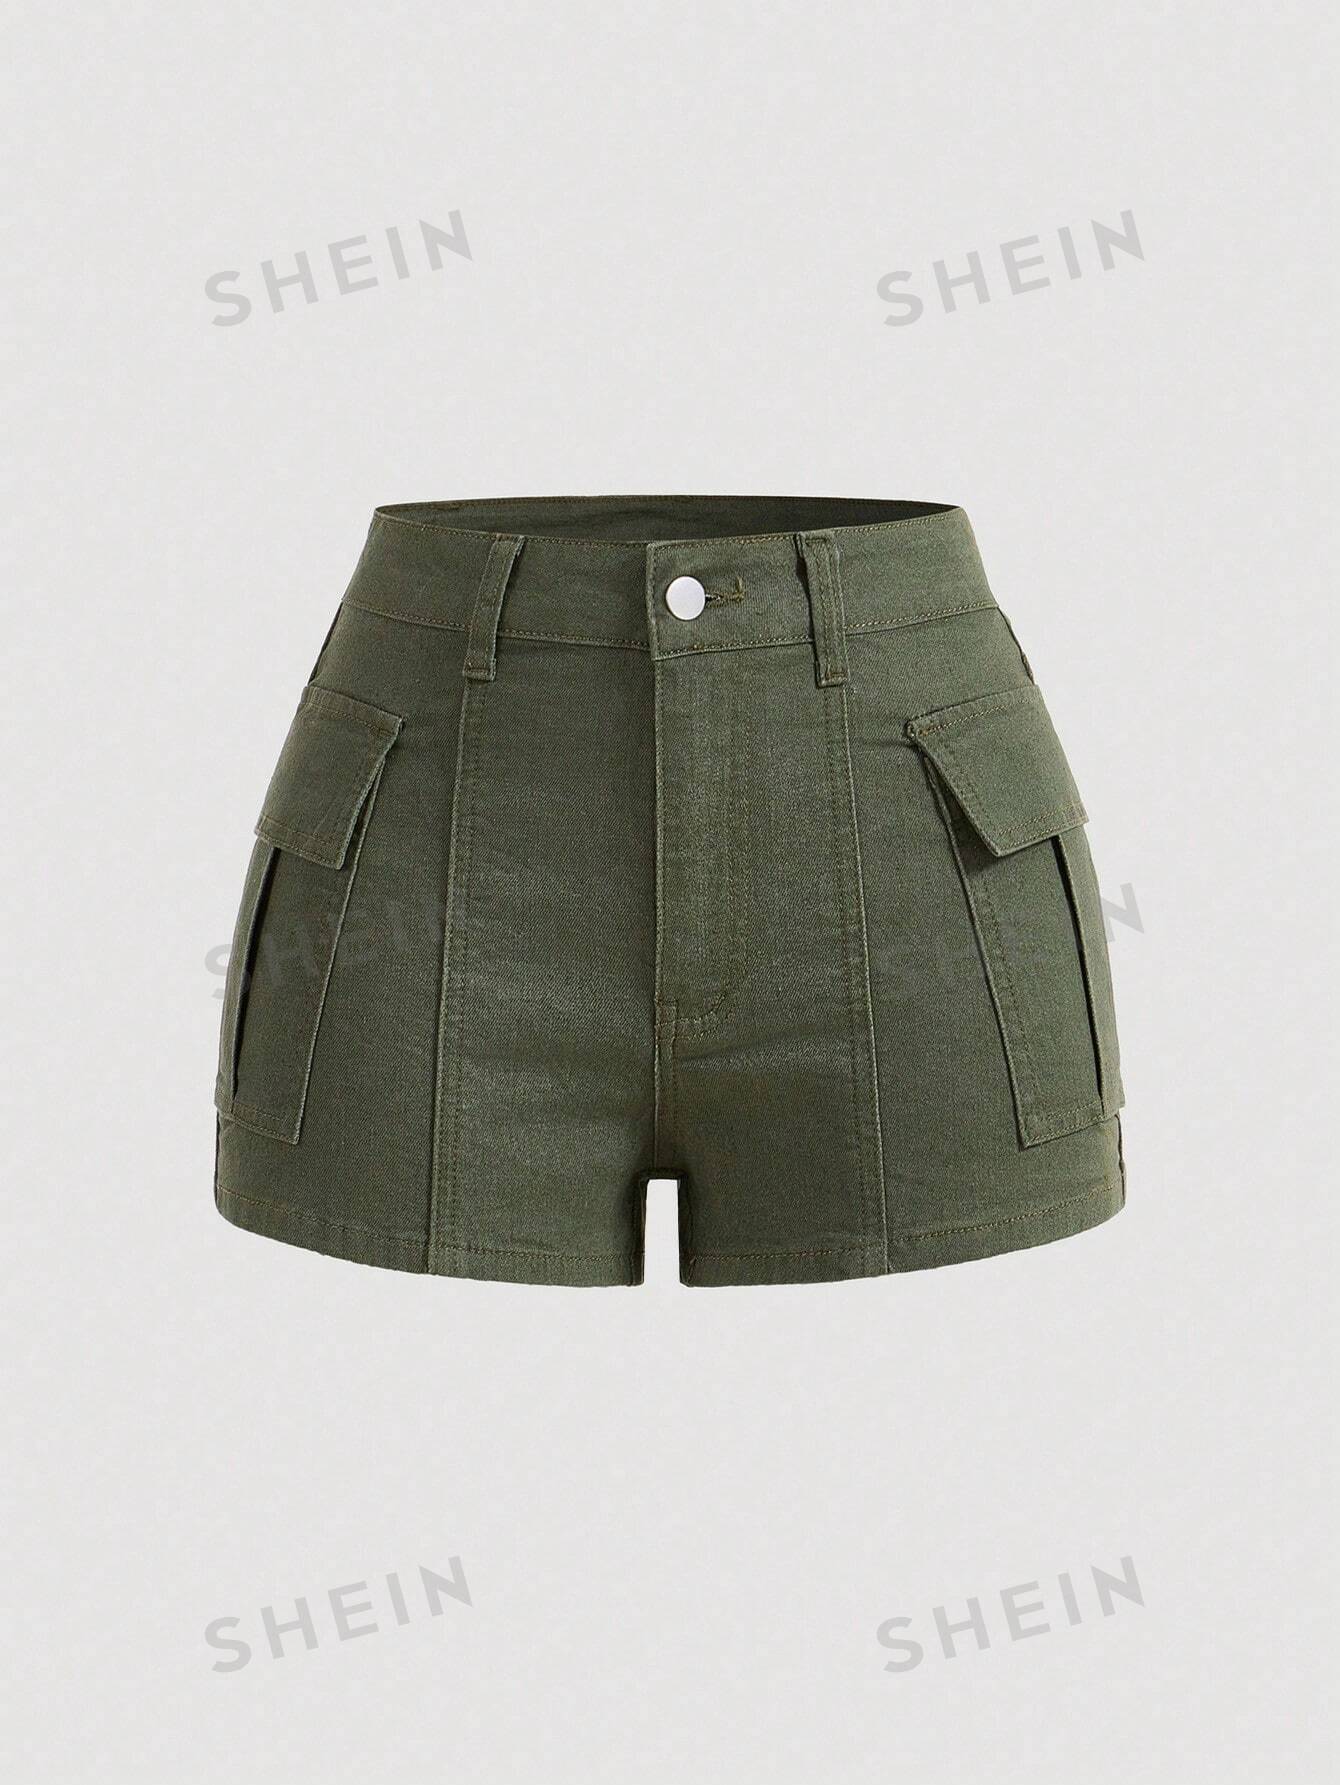 SHEIN MOD Женские популярные шорты, джинсовые джинсовые шорты, оливково-зеленый шорты женские сара